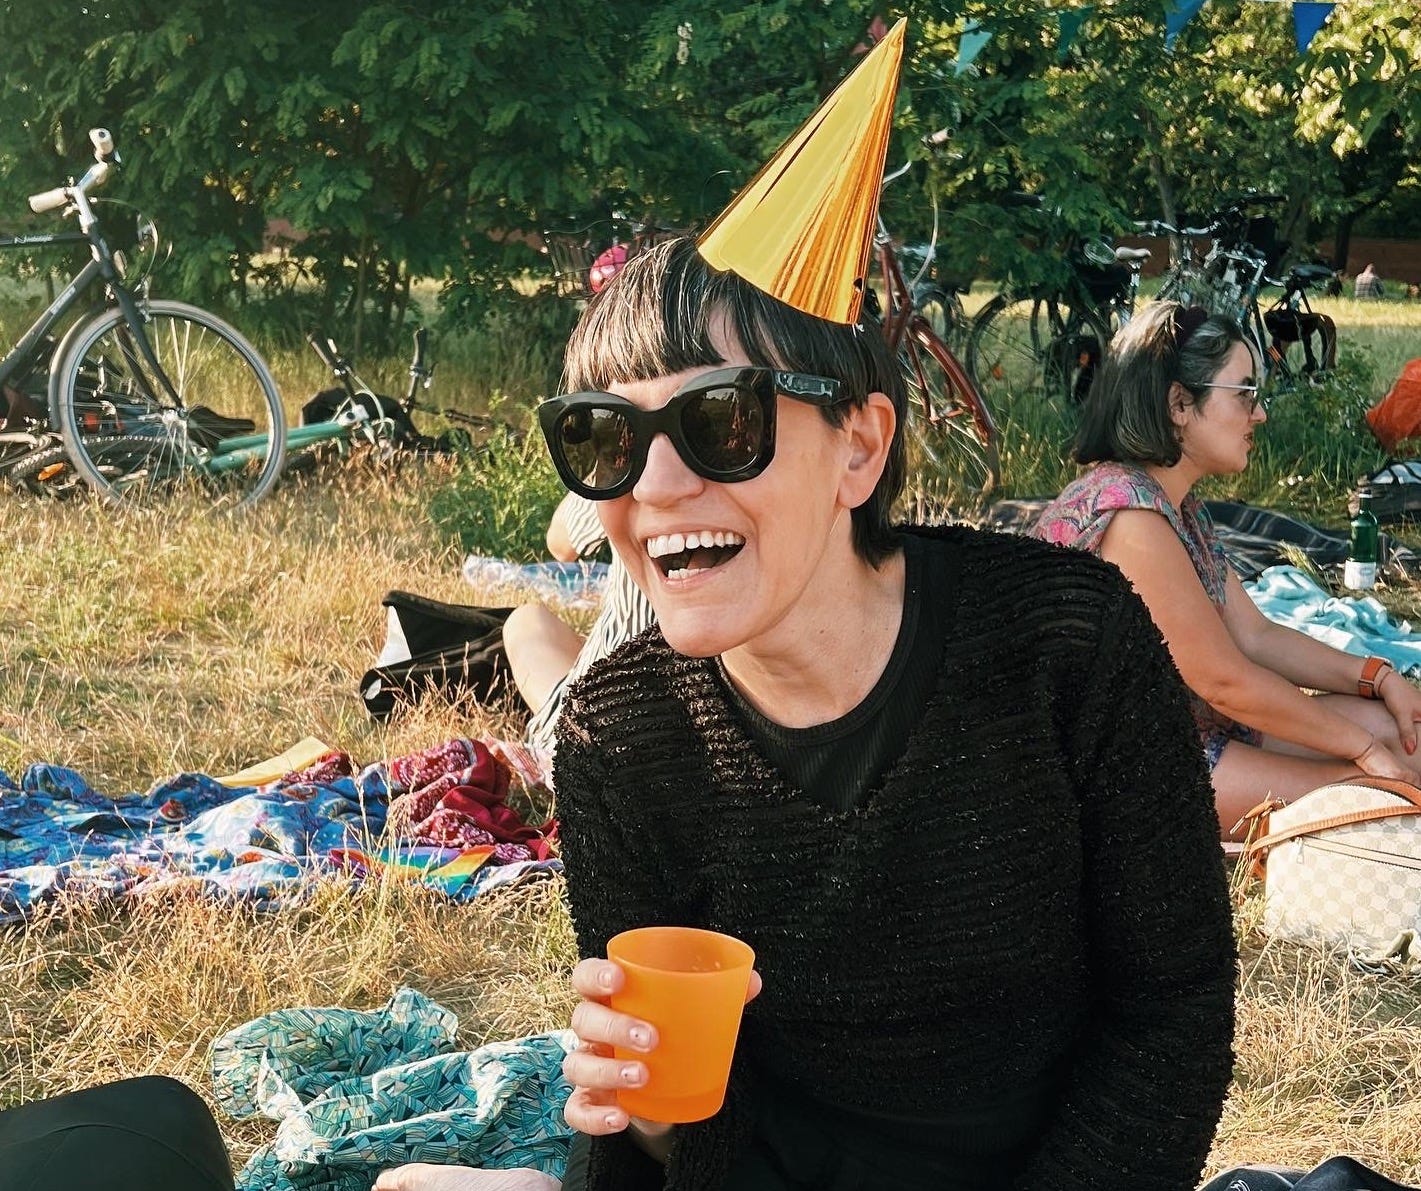 Imagem: Mulher cabelo curto,franja, oculos escuros grandes, rindo e com um chapéu em cone dourado. Segura um copo e está sentada na grama. Atrás há outras pessoas.